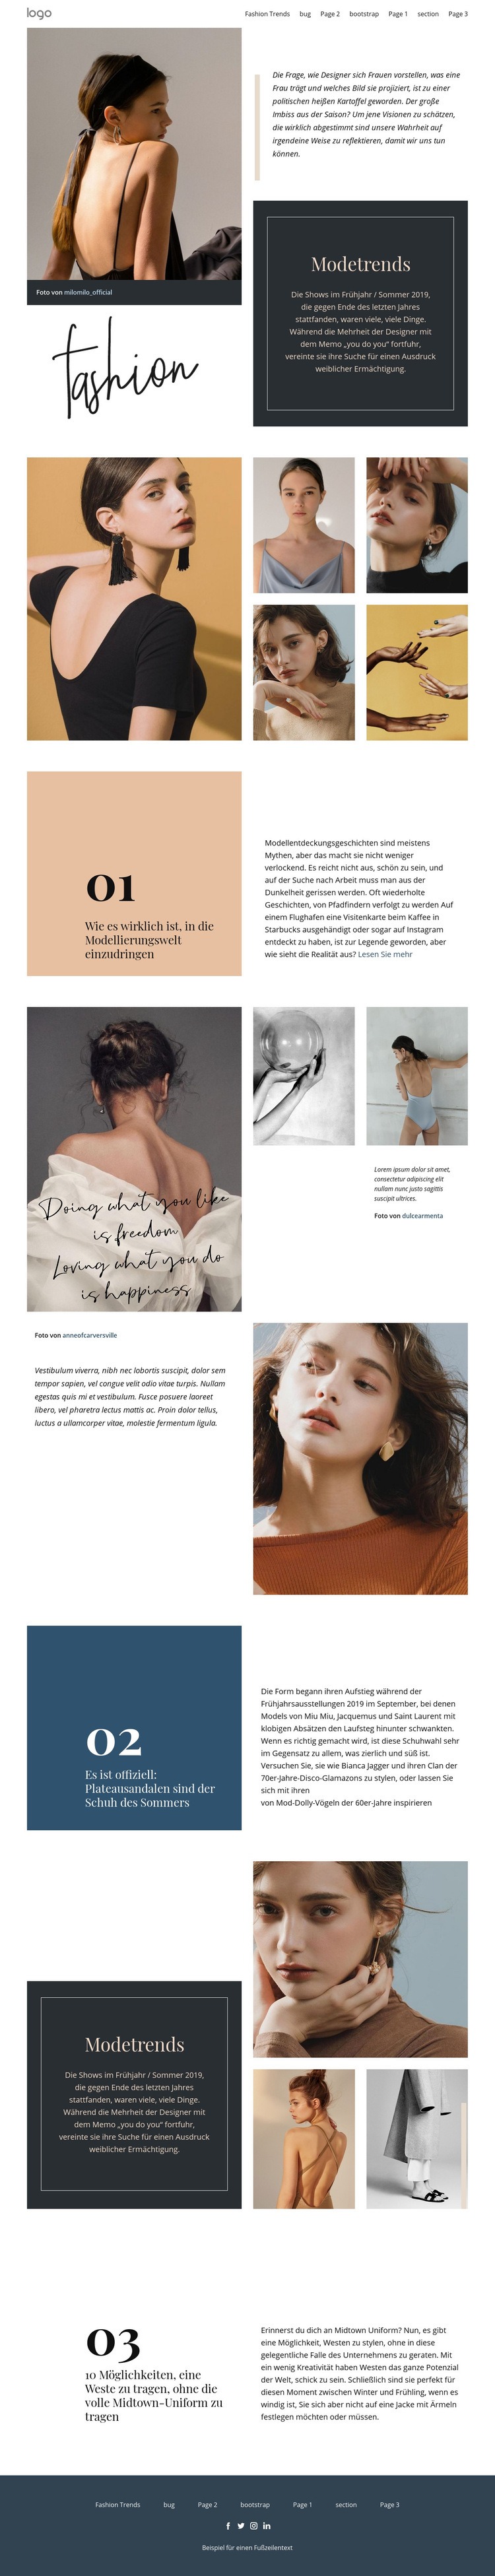 Designer Vision von Mode Website-Modell